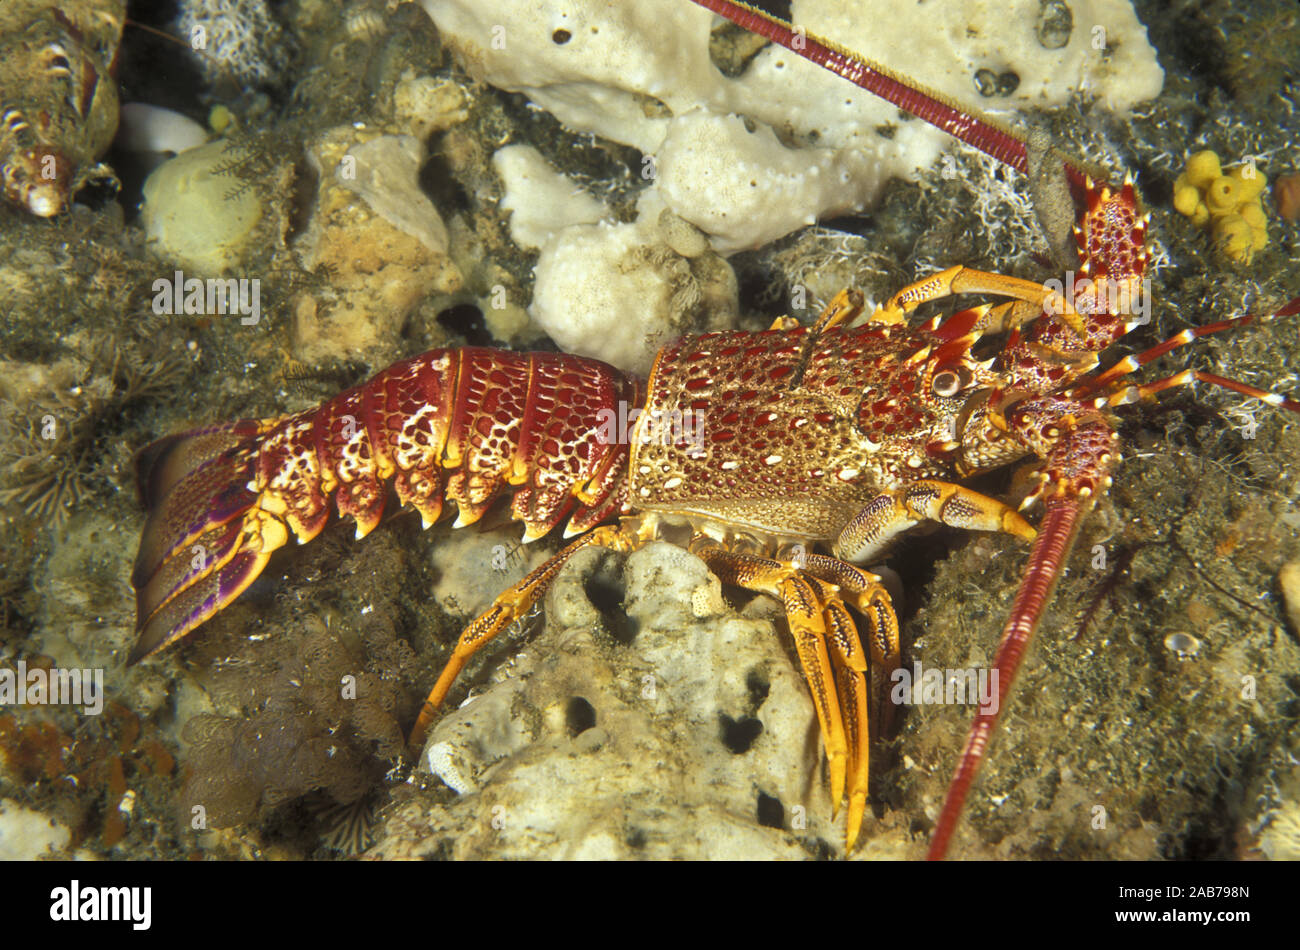 Southern rock lobster (Jasus edwardsii), discarded exoskeleton. A commercial species. Tasman Peninsula, Tasmania, Australia Stock Photo